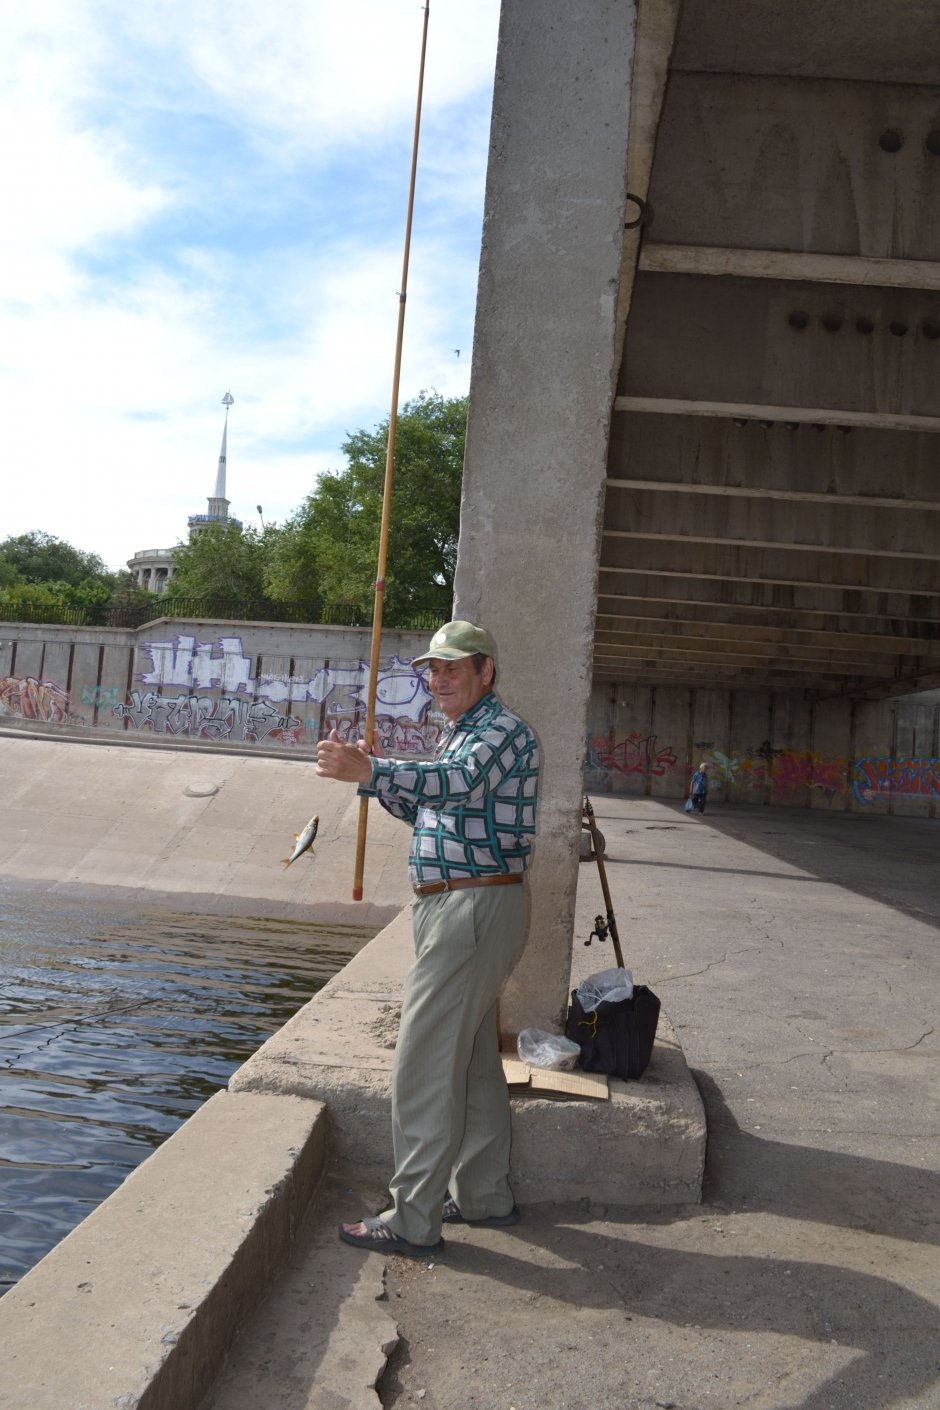 Юрий Масленников, 60 лет, электромонтер: "Рыбалка – мое хобби. С детства люблю половить рыбки! Сегодня хороший день. Улов, чаю, засолю".